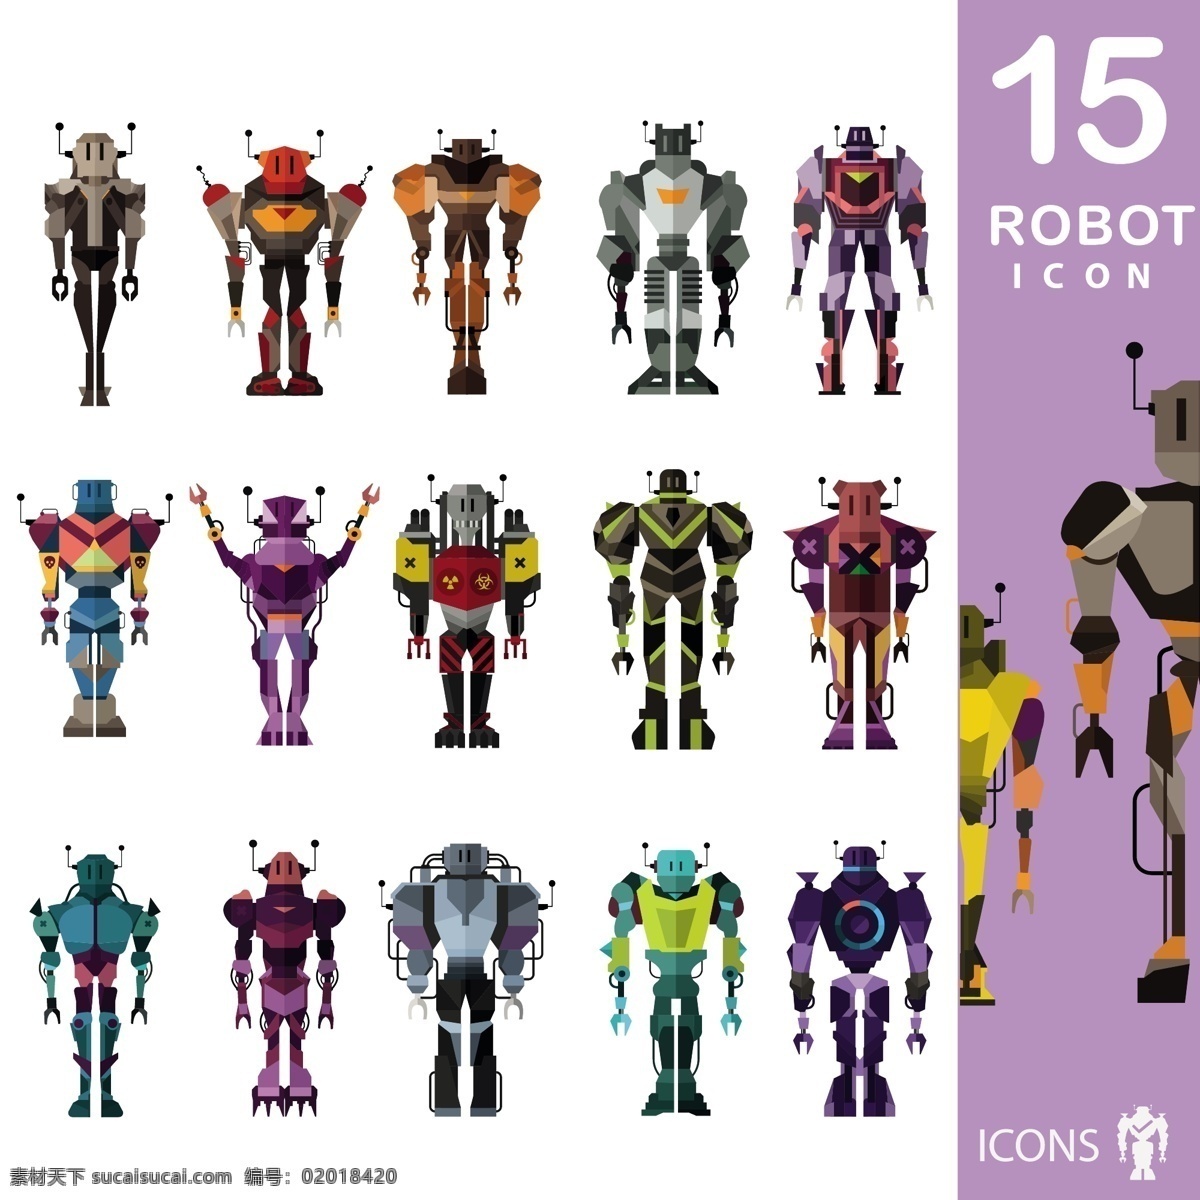 机器人 图标 集 技术 人物 卡通 科学 色彩 元素 未来 卡通人物 机器 玩具 符号 设计元素 未来派 颜色 图标集